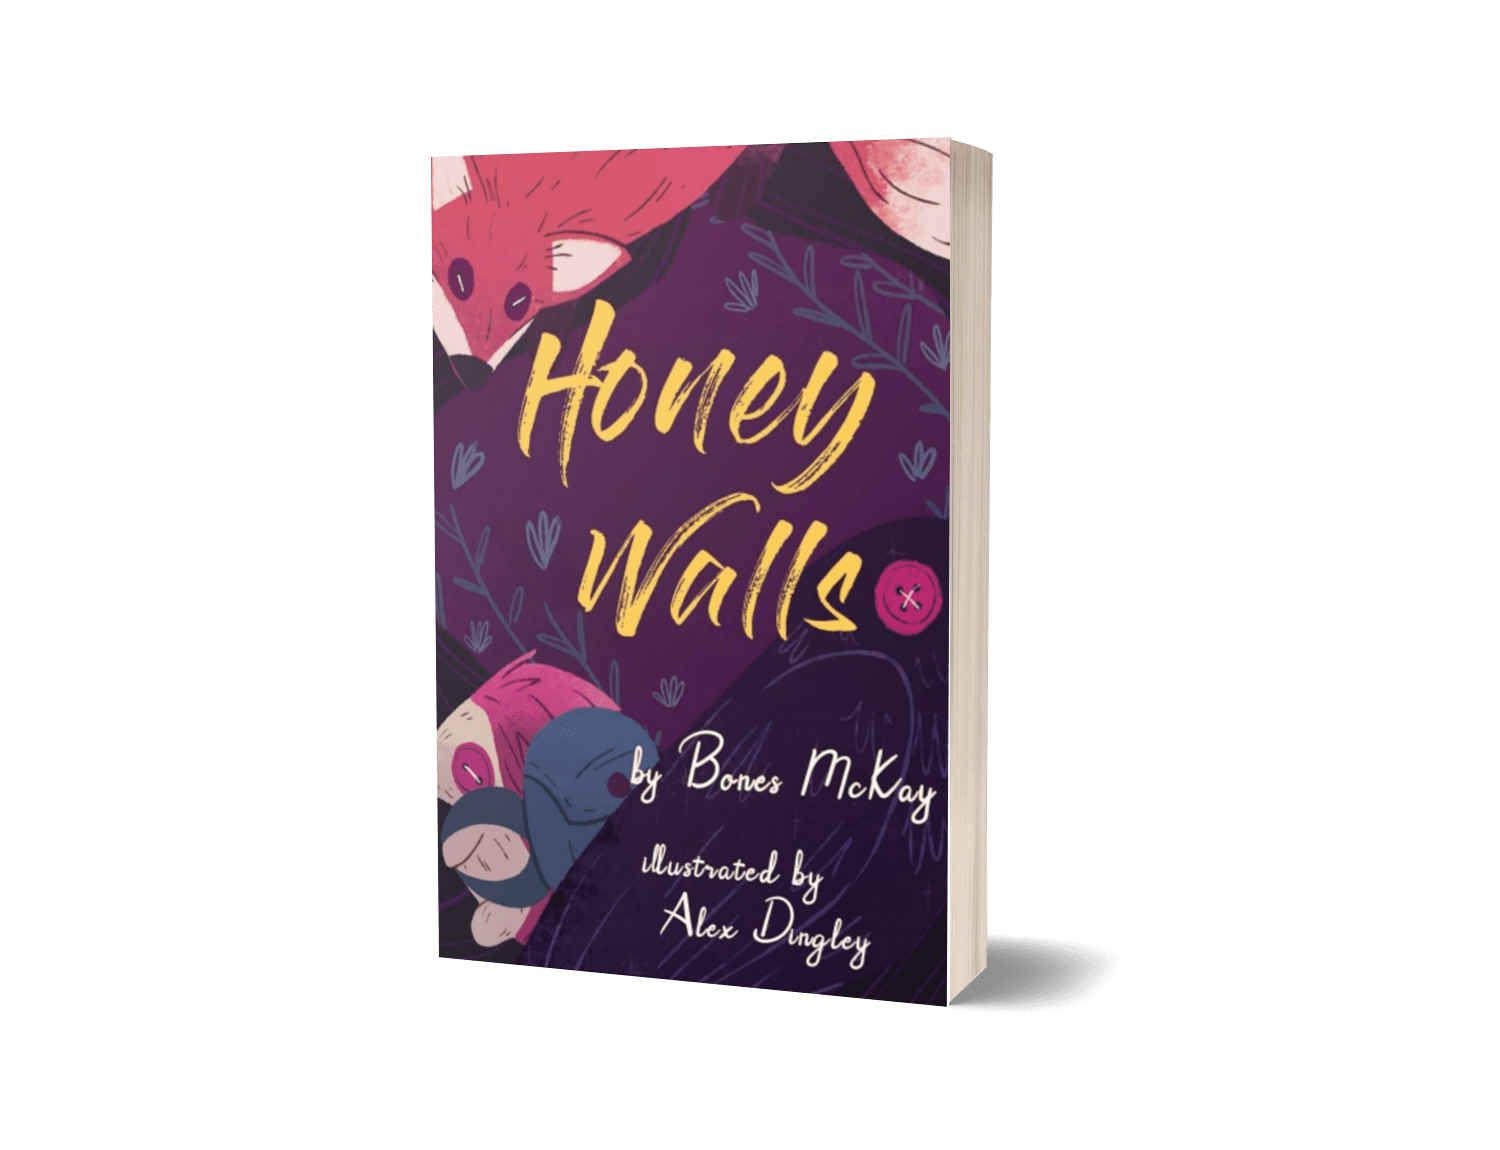 Honey Walls